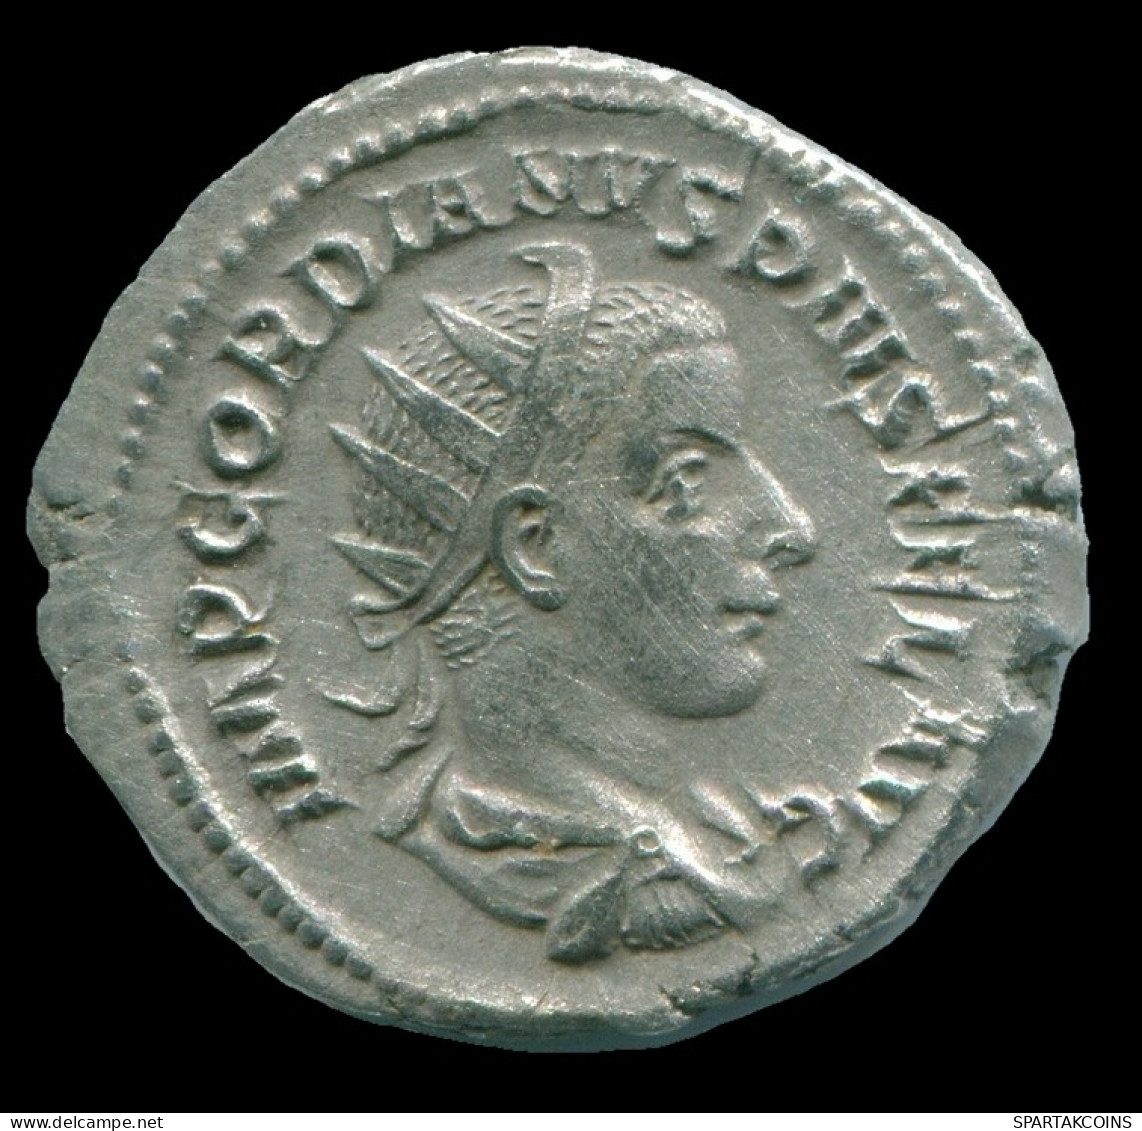 GORDIAN III AR ANTONINIANUS ROME Mint AD 239 VIRTVS AVG #ANC13160.35.U.A - La Crisis Militar (235 / 284)